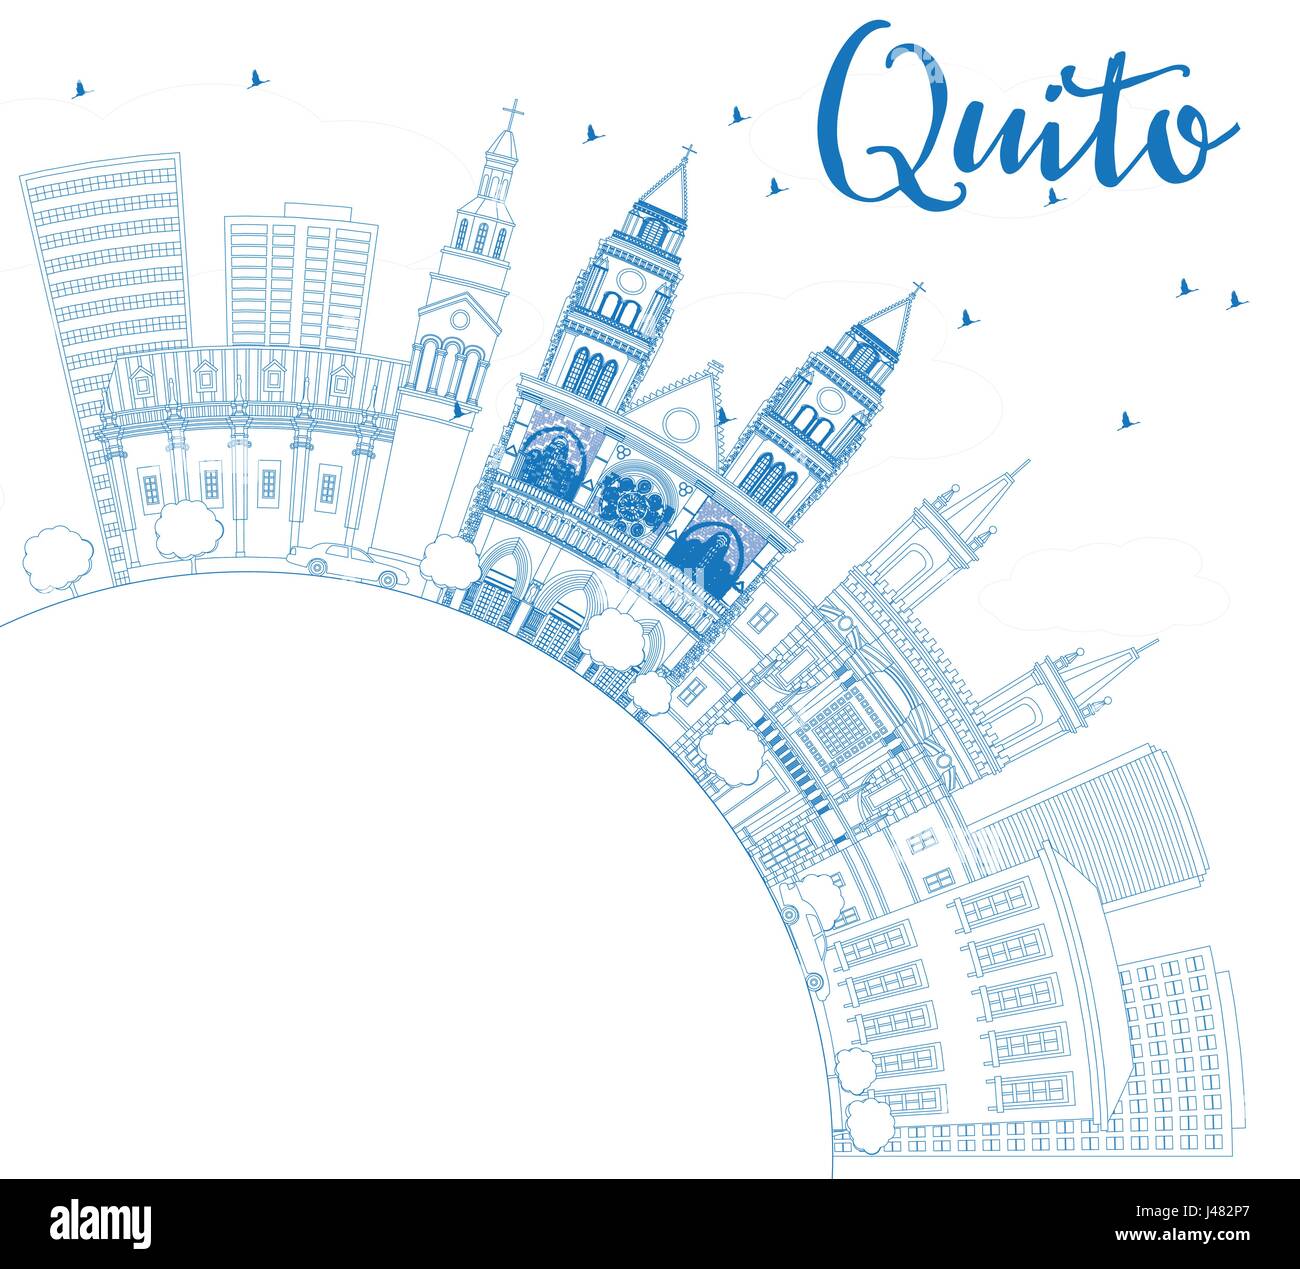 Umriss Quito mit blauen Gebäuden und textfreiraum Skyline. Vektor-Illustration. Geschäftsreisen und Tourismus-Konzept mit historischer Architektur. Stock Vektor